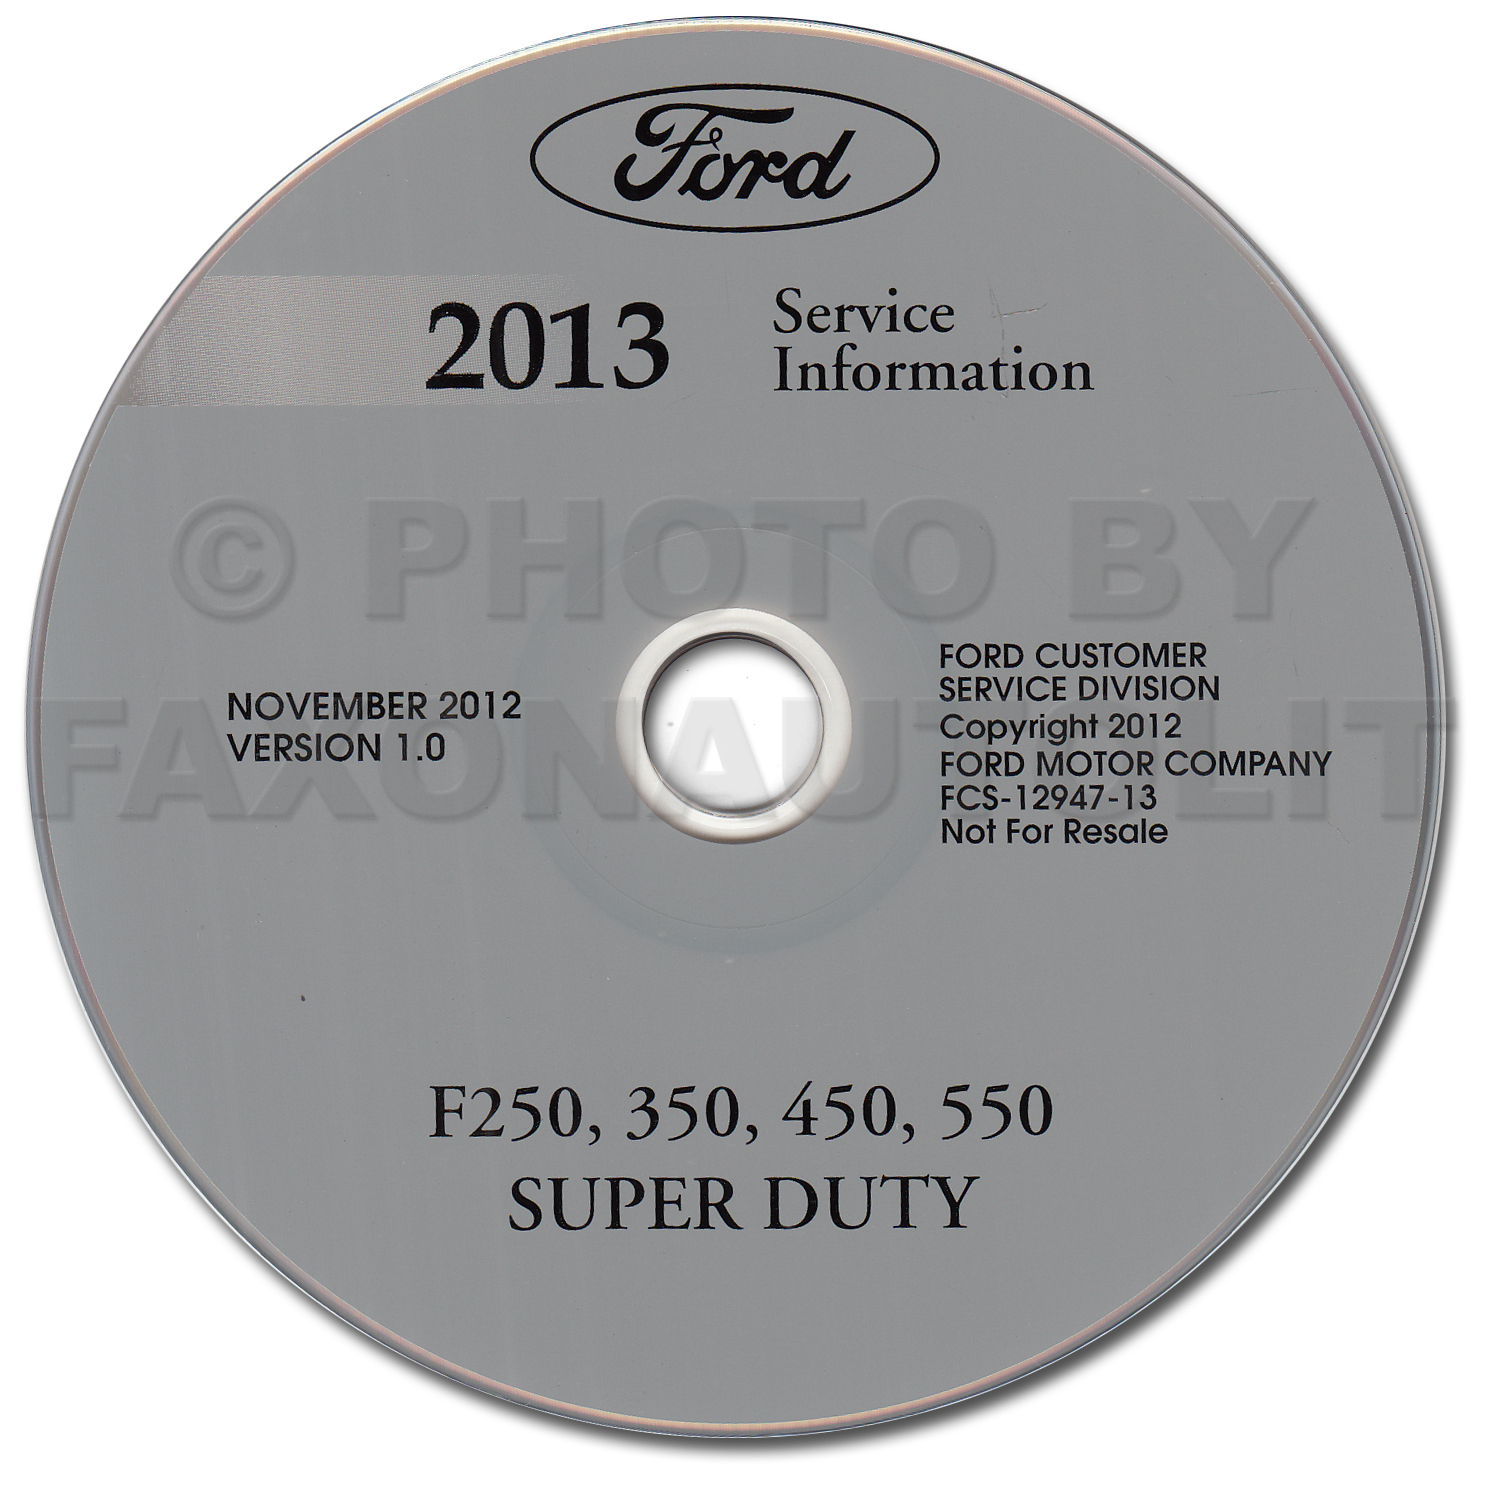 2013 Ford F250 F350 F450 F550 Super Duty Truck Repair Shop Manual on CD-ROM Original